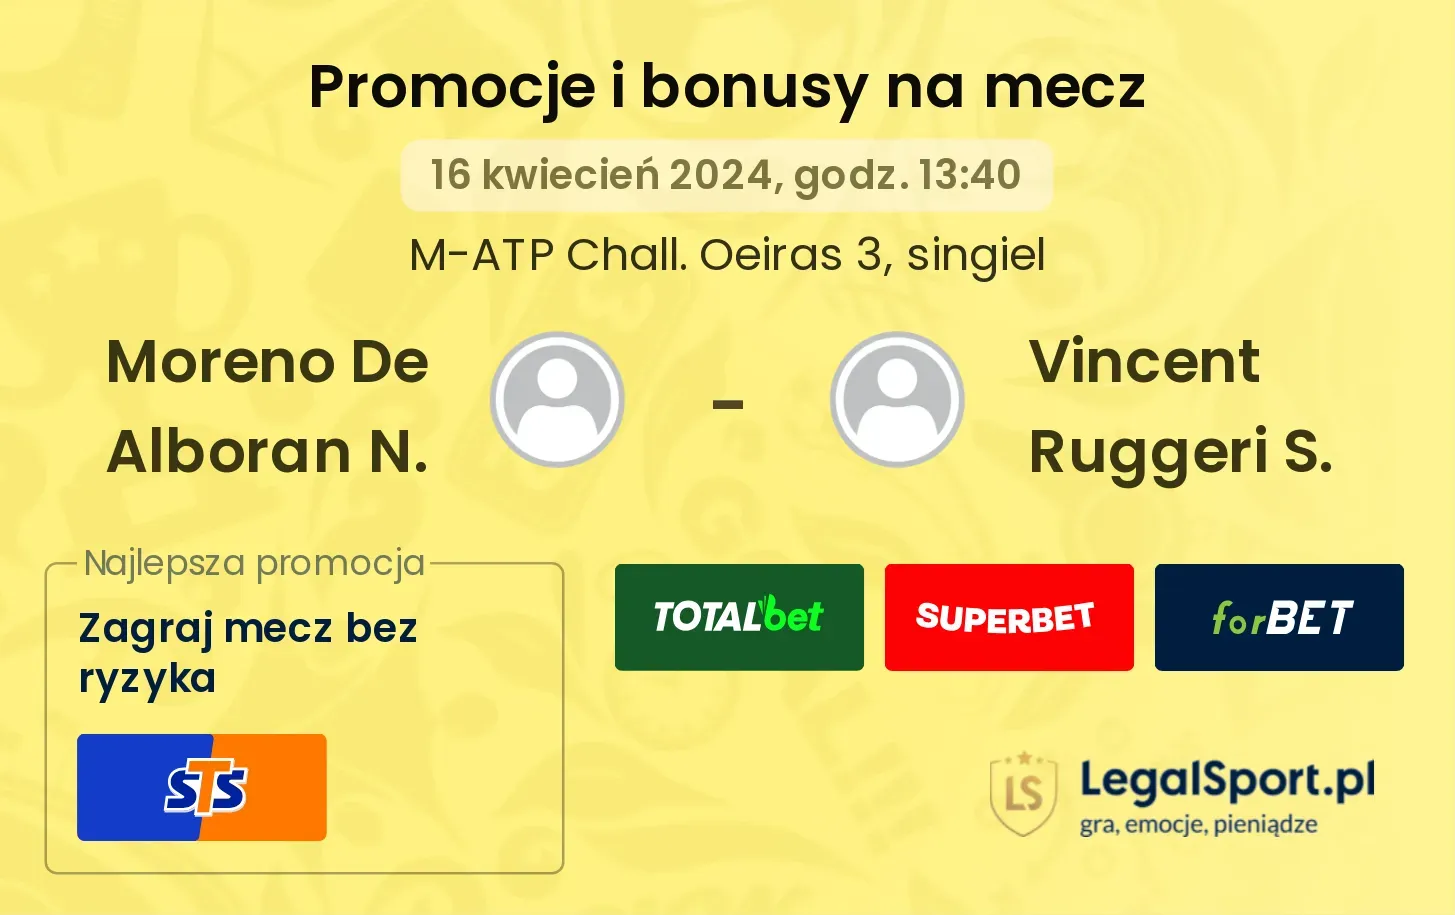 Moreno De Alboran N. - Vincent Ruggeri S. promocje bonusy na mecz